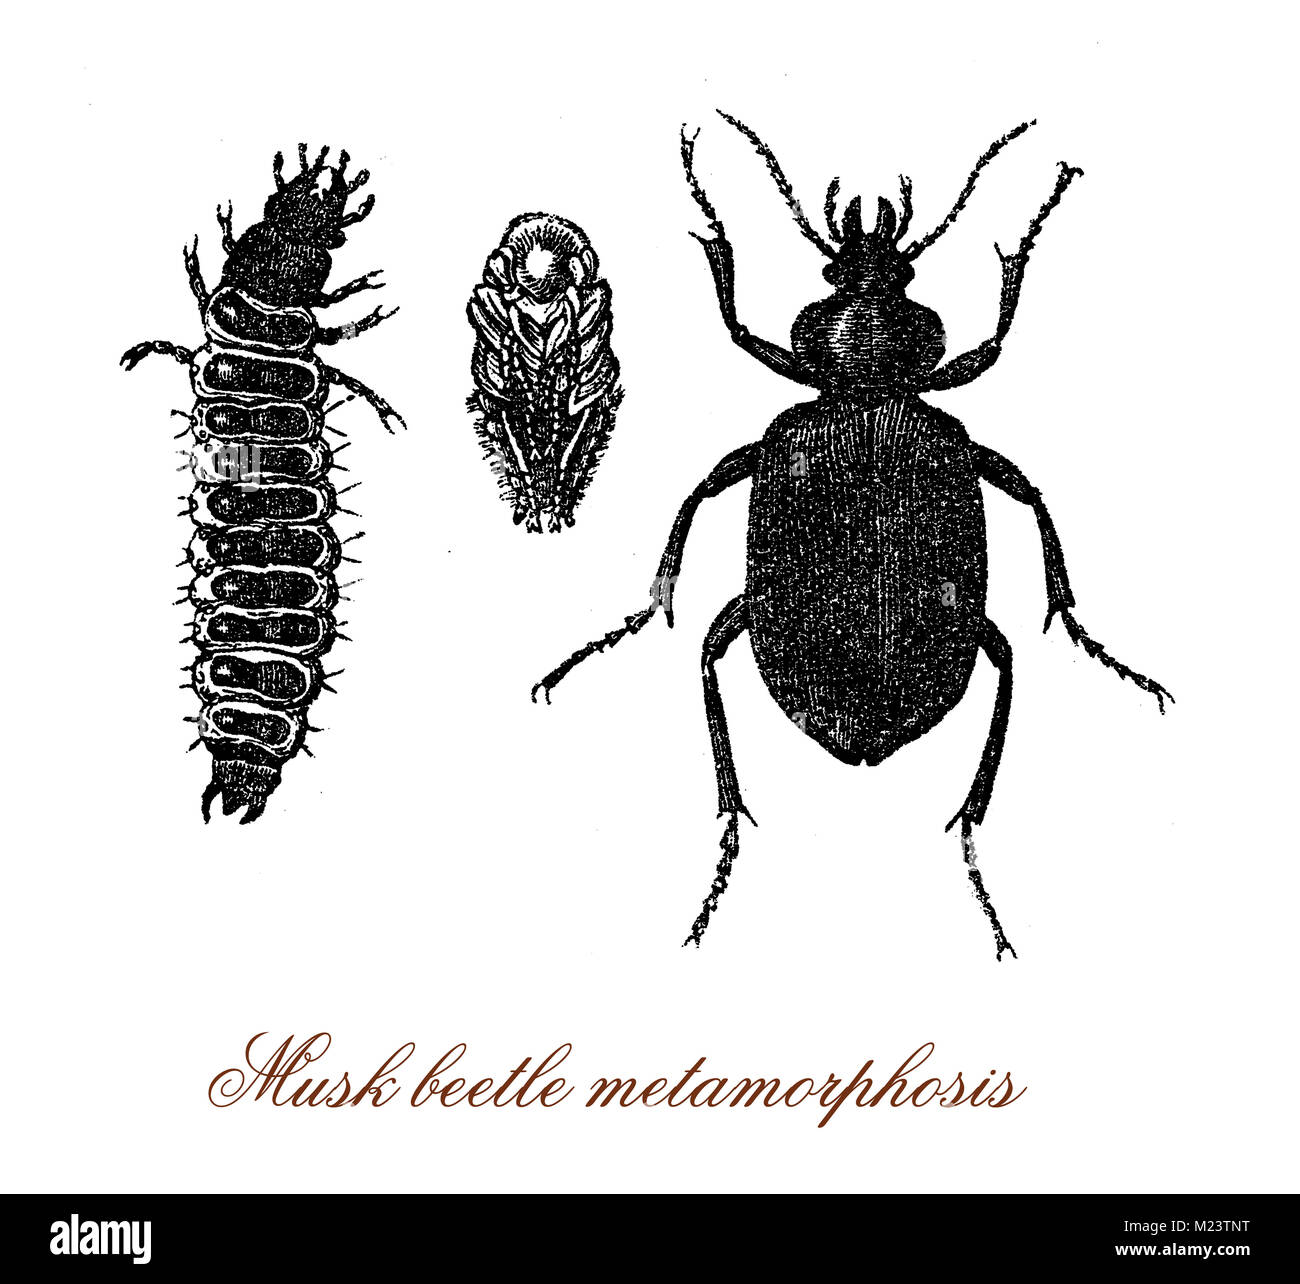 Musk beetle metamorphosis from larva to adult, vintage engraving Stock Photo